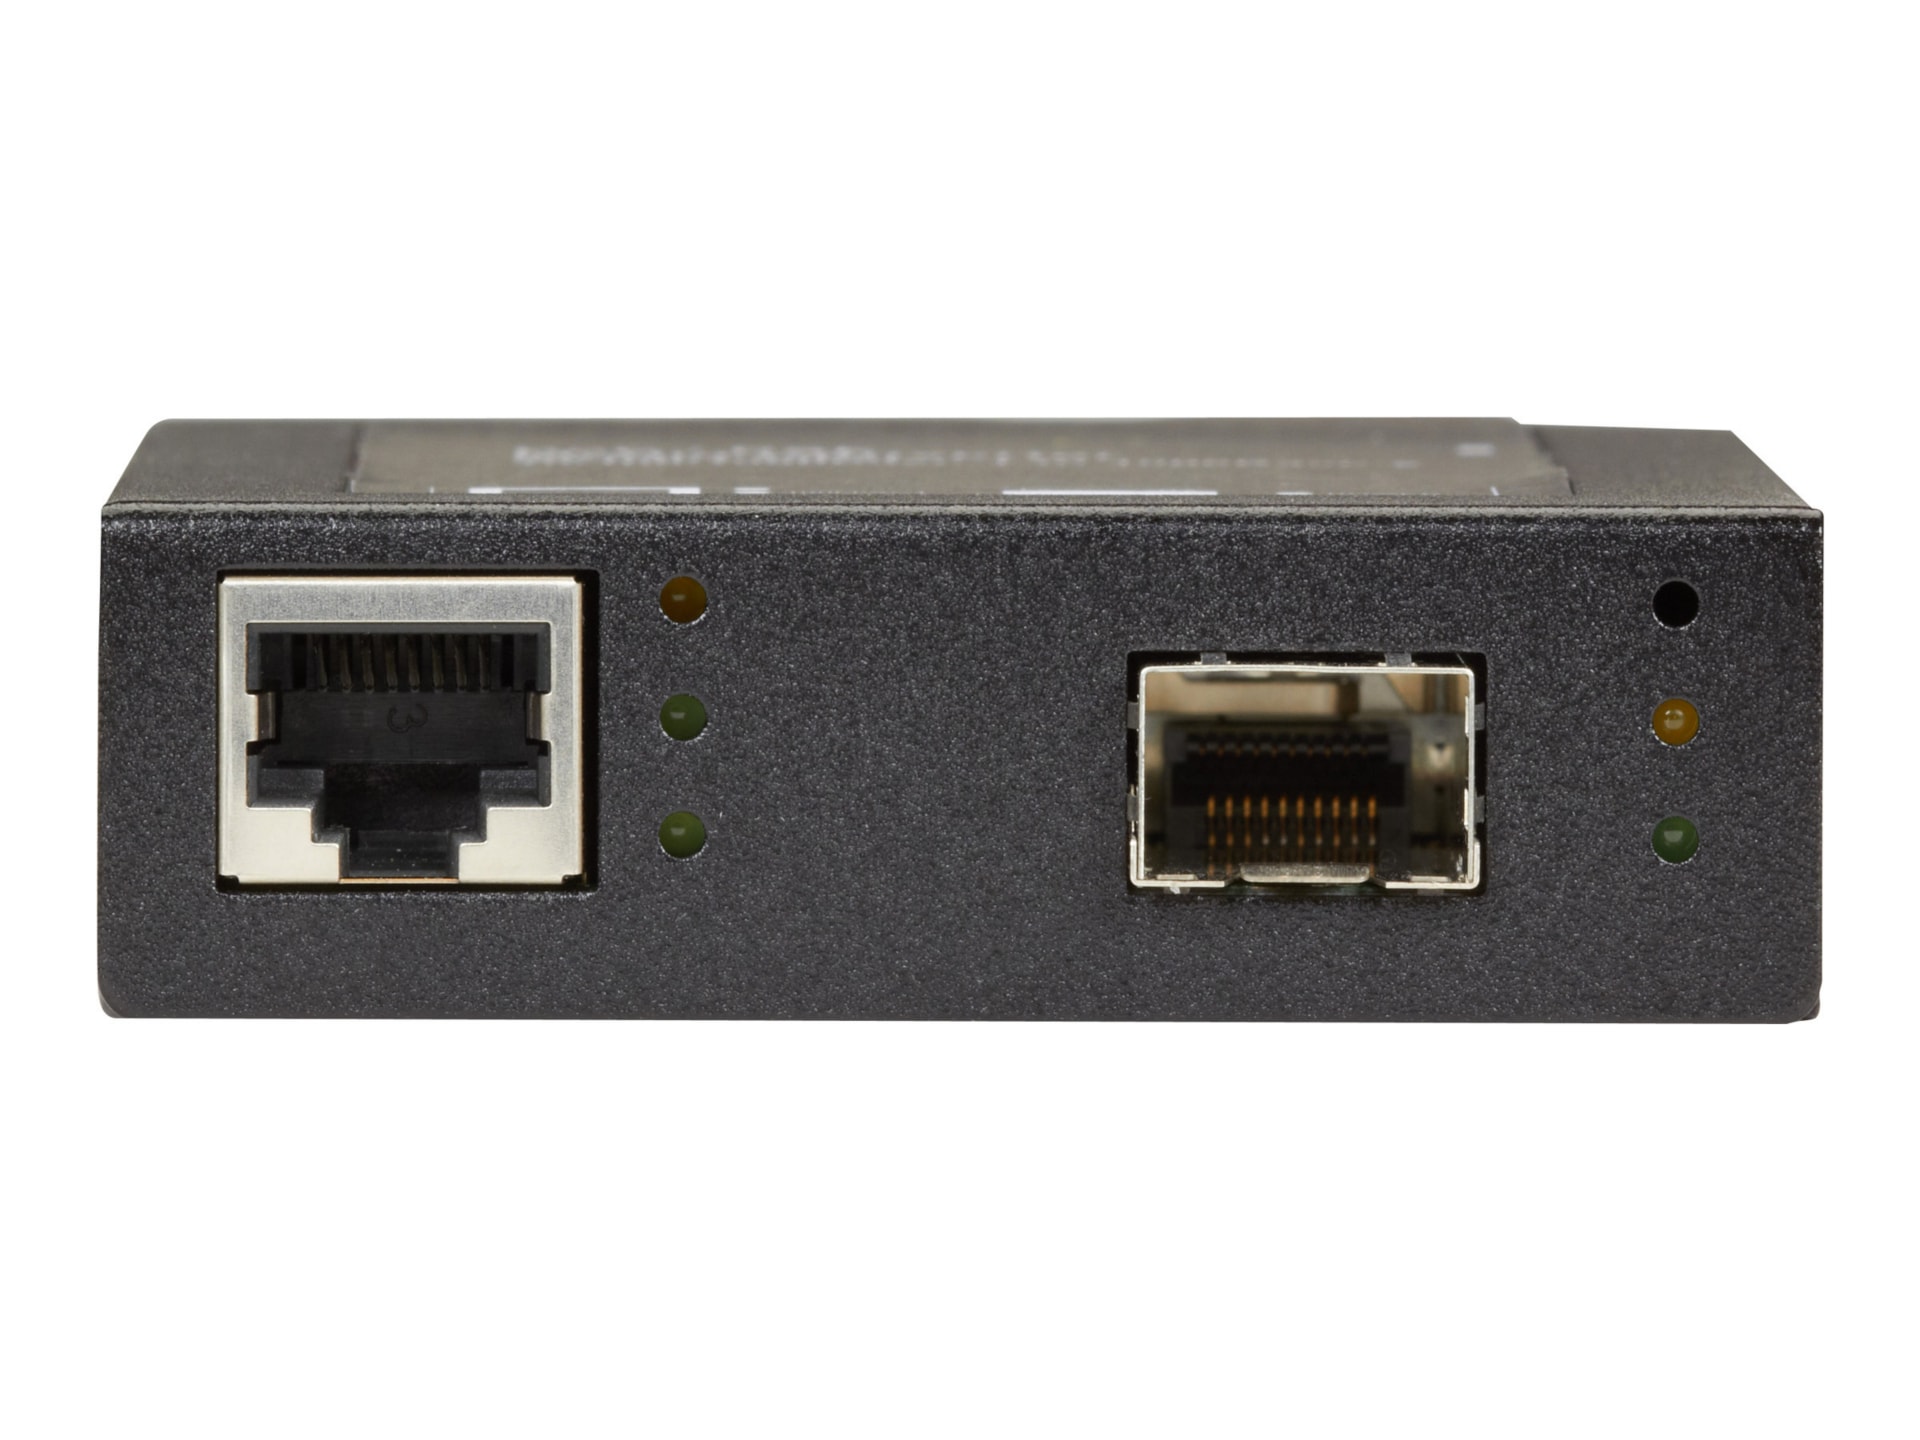 Black Box PoE+ PSE Media Converter, 10/100/1000 RJ45 to SFP 1000BaseSX /LX